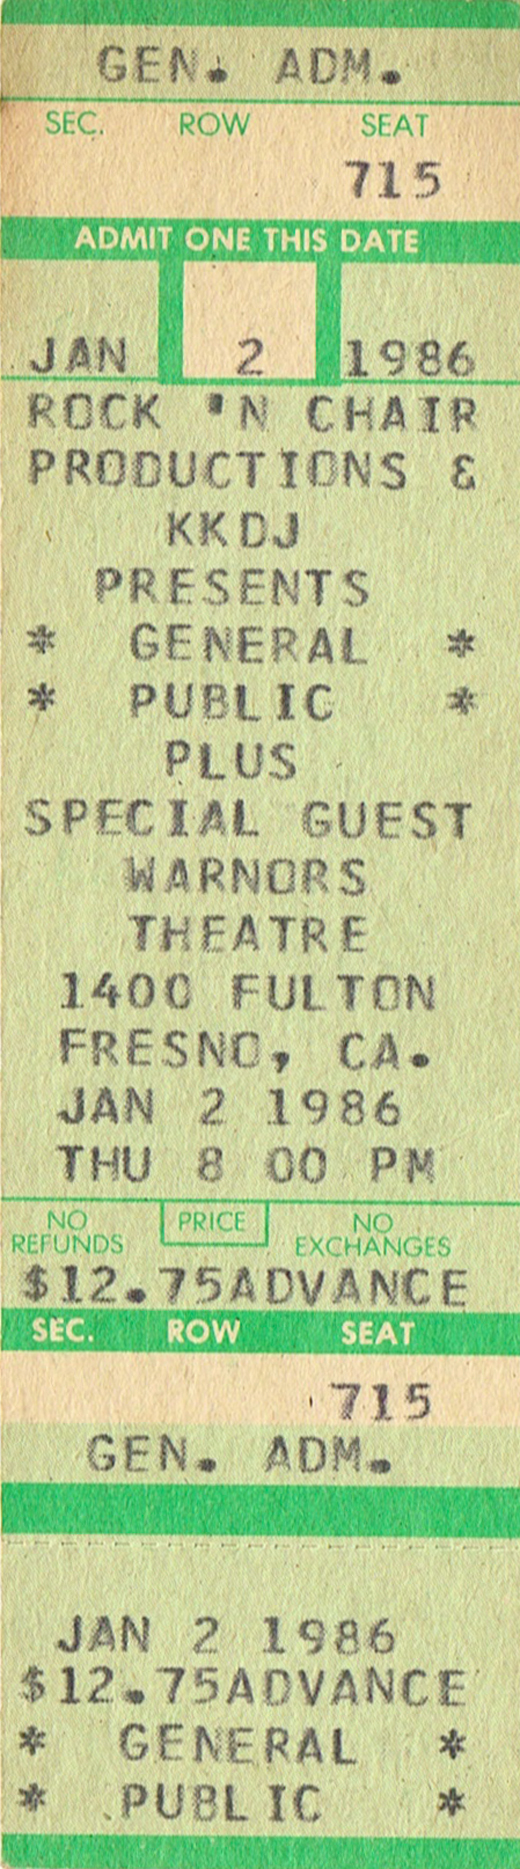 General Public 01-02-86 Warnors Theatre - Fresno, CA Full Unused Ticket